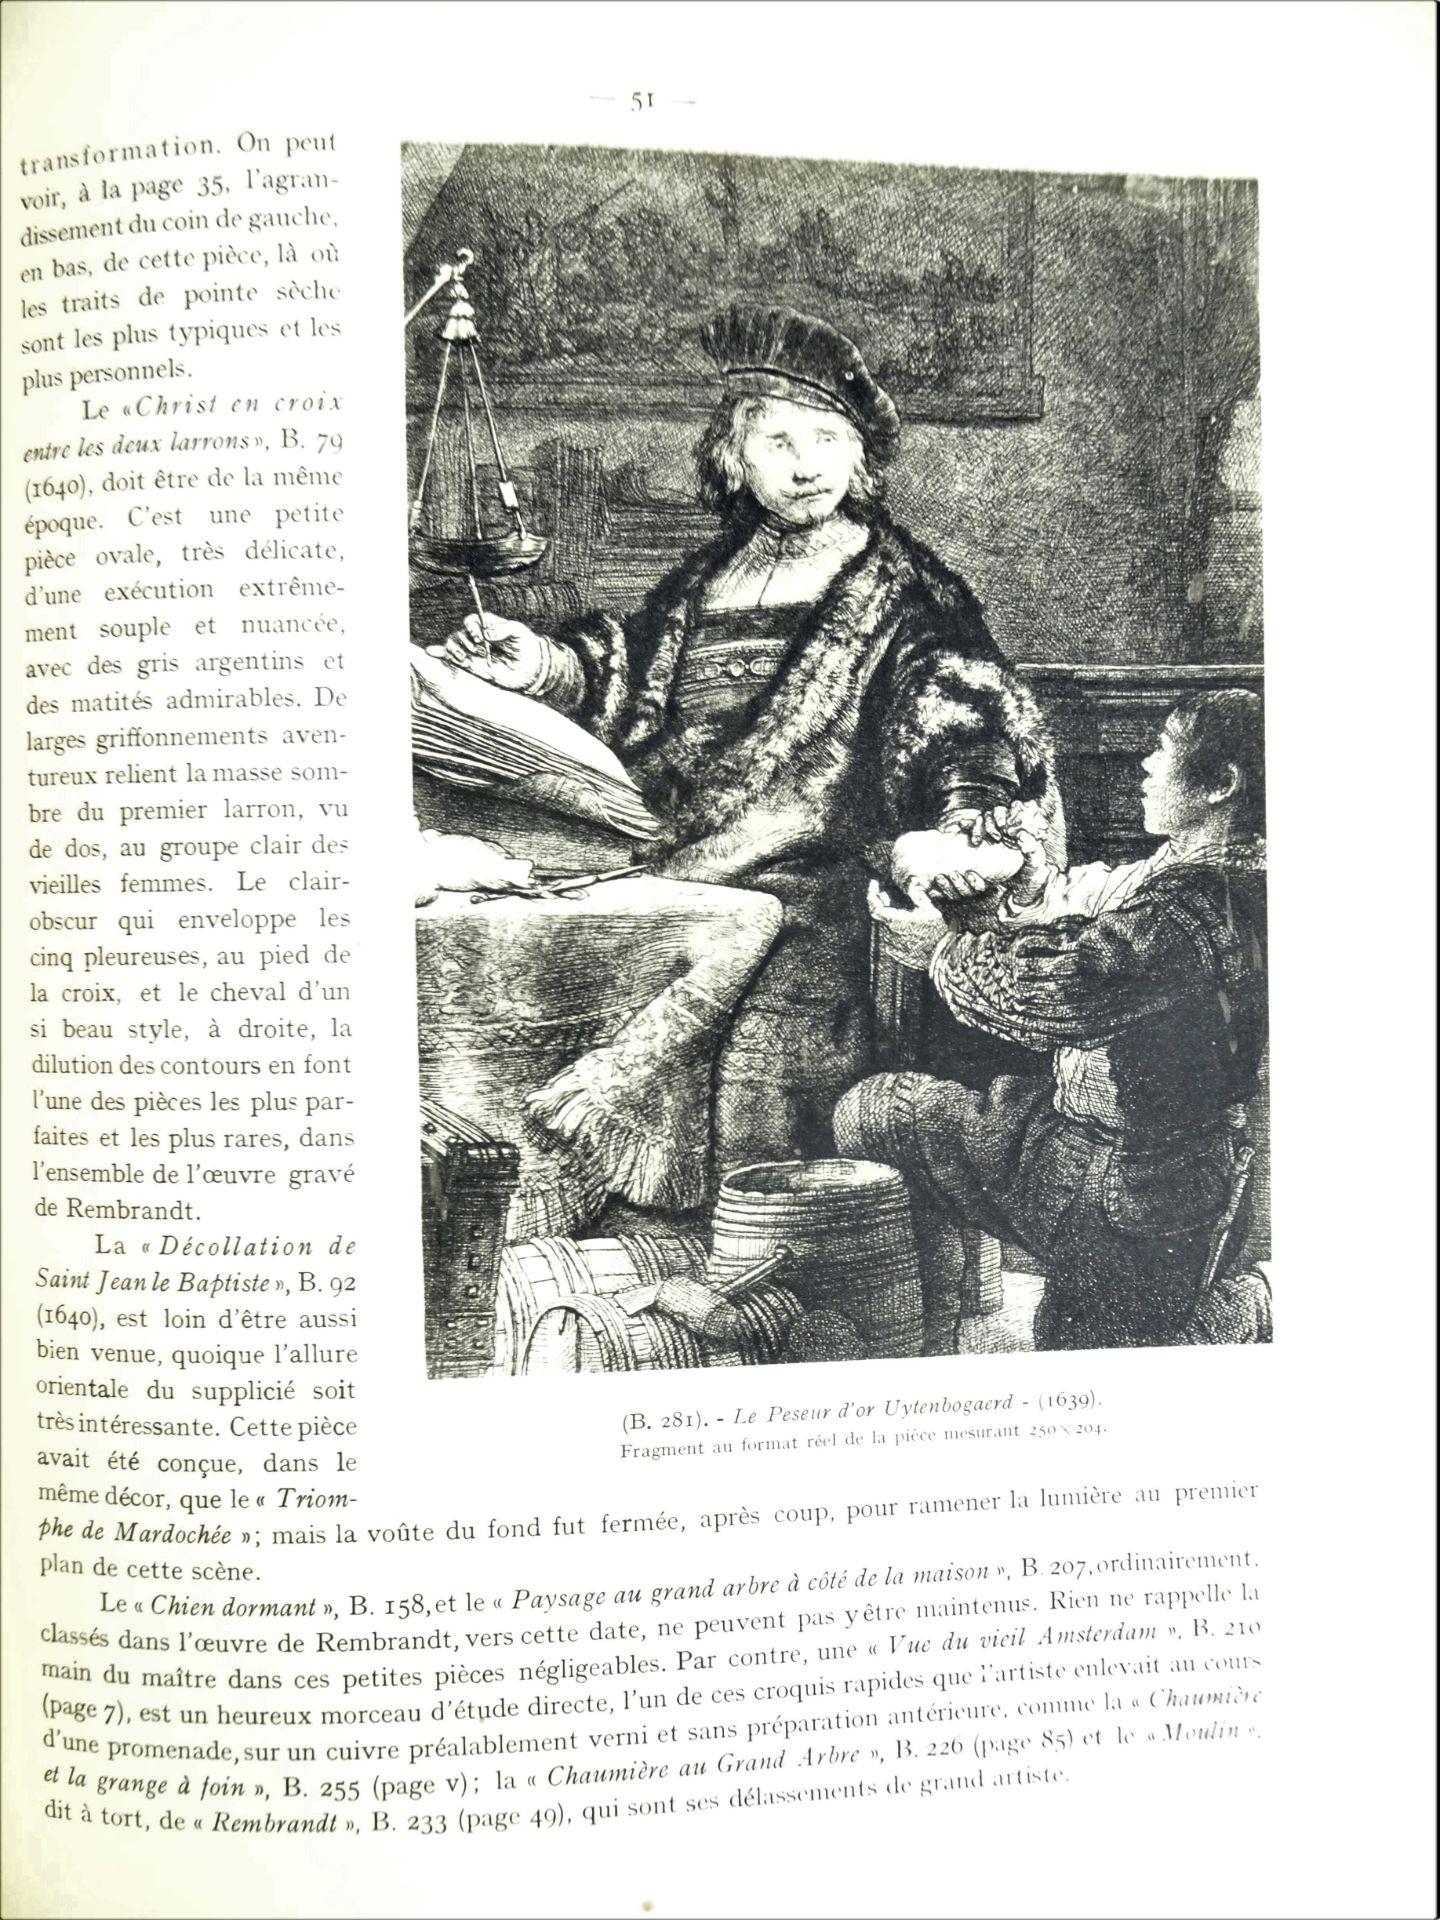 |Art|André Charles Coppier, "Les eaux-fortes de Rembrandt", 1922, limité. Paris, Armand Colin, " - Image 10 of 15